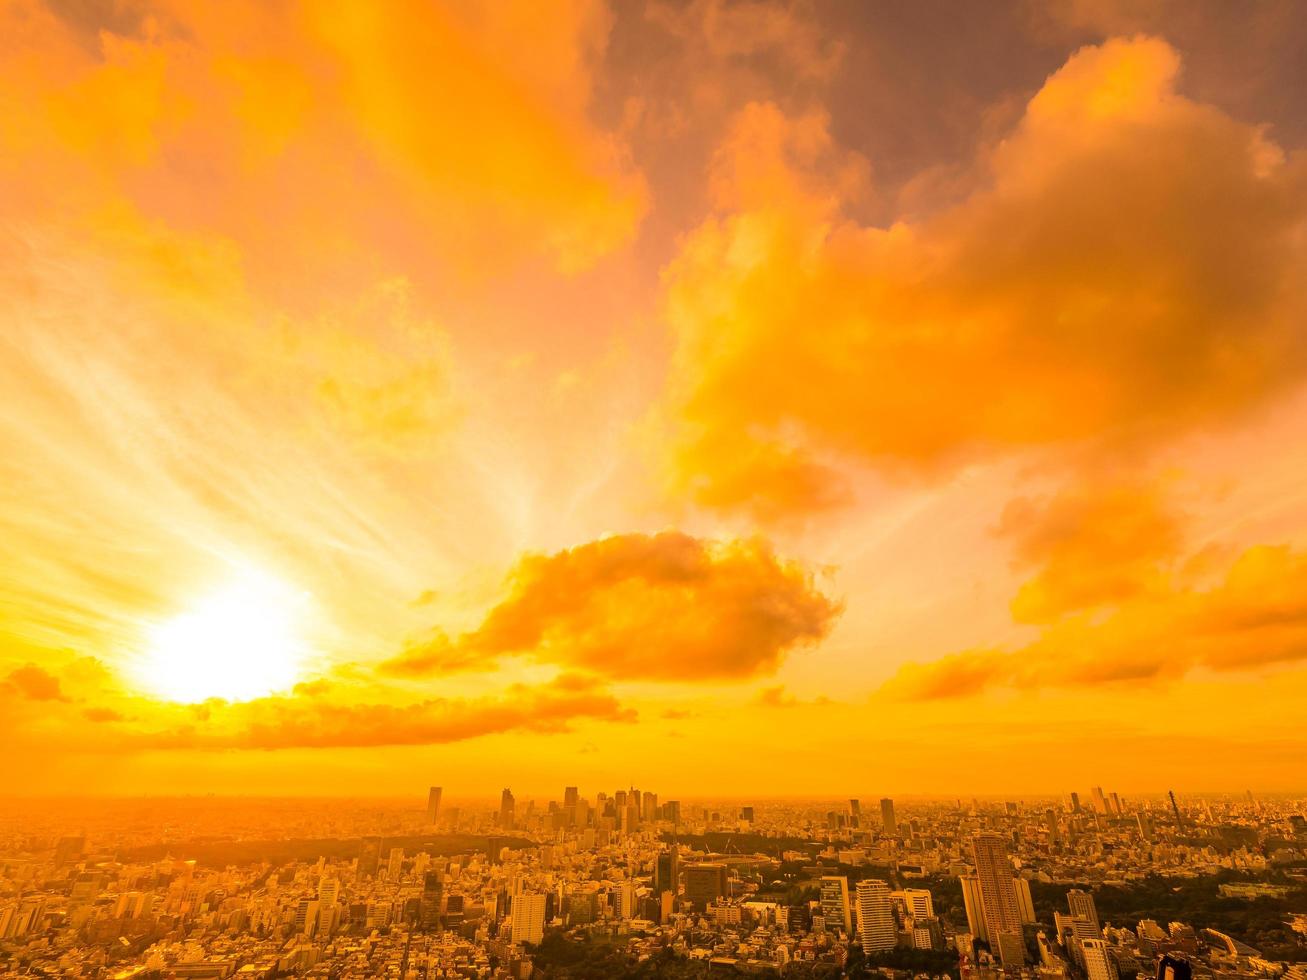 vista aerea della città di tokyo al tramonto foto